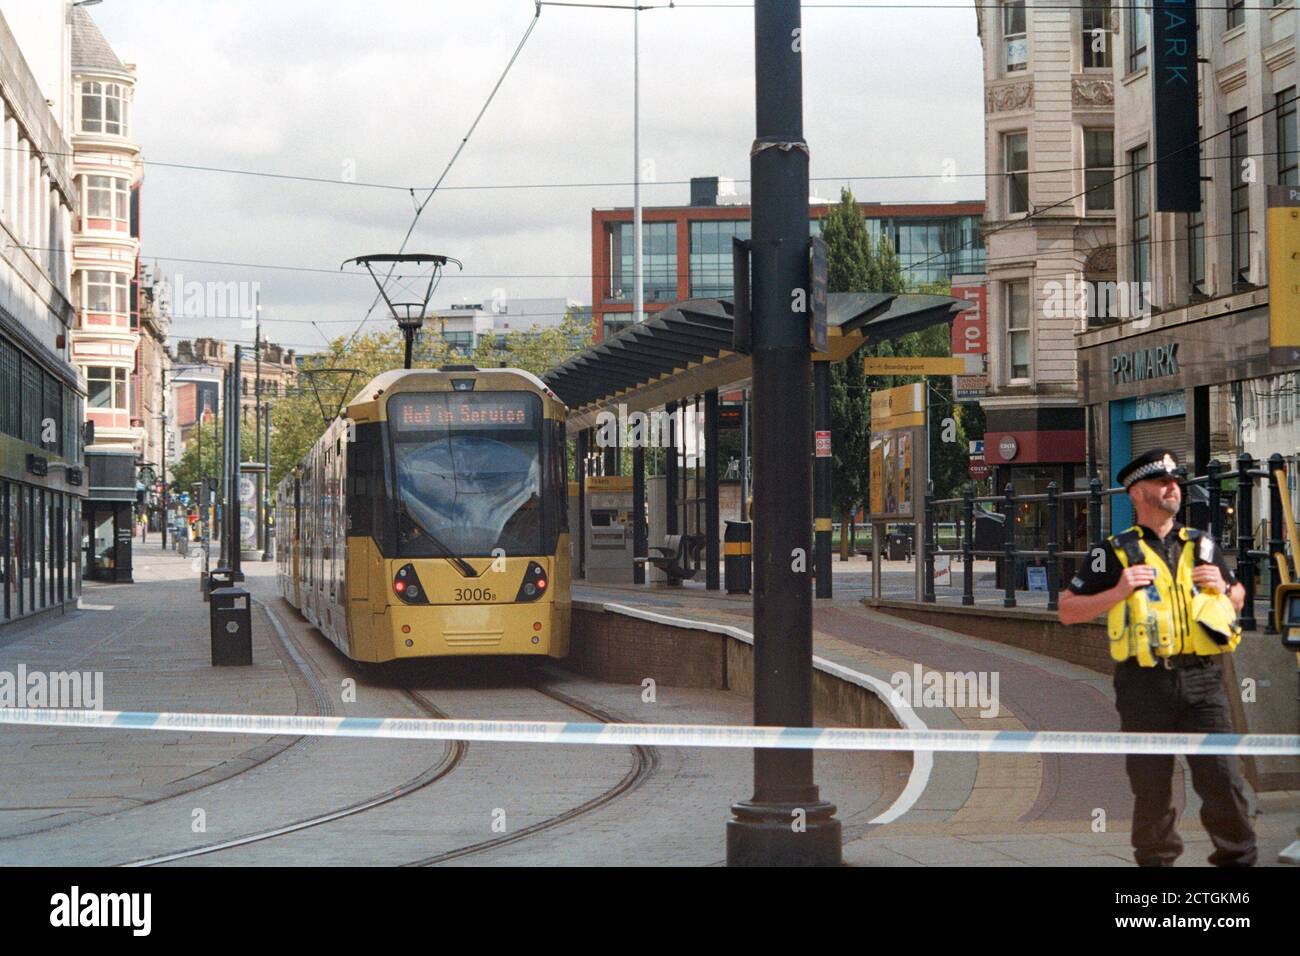 Manchester, 5 septembre 2020: En raison d'un "objet de fantaisie" a été trouvé dans un bus près de la gare routière de Manchester Piccadilly, le tram a été temporairement arrêté. Banque D'Images